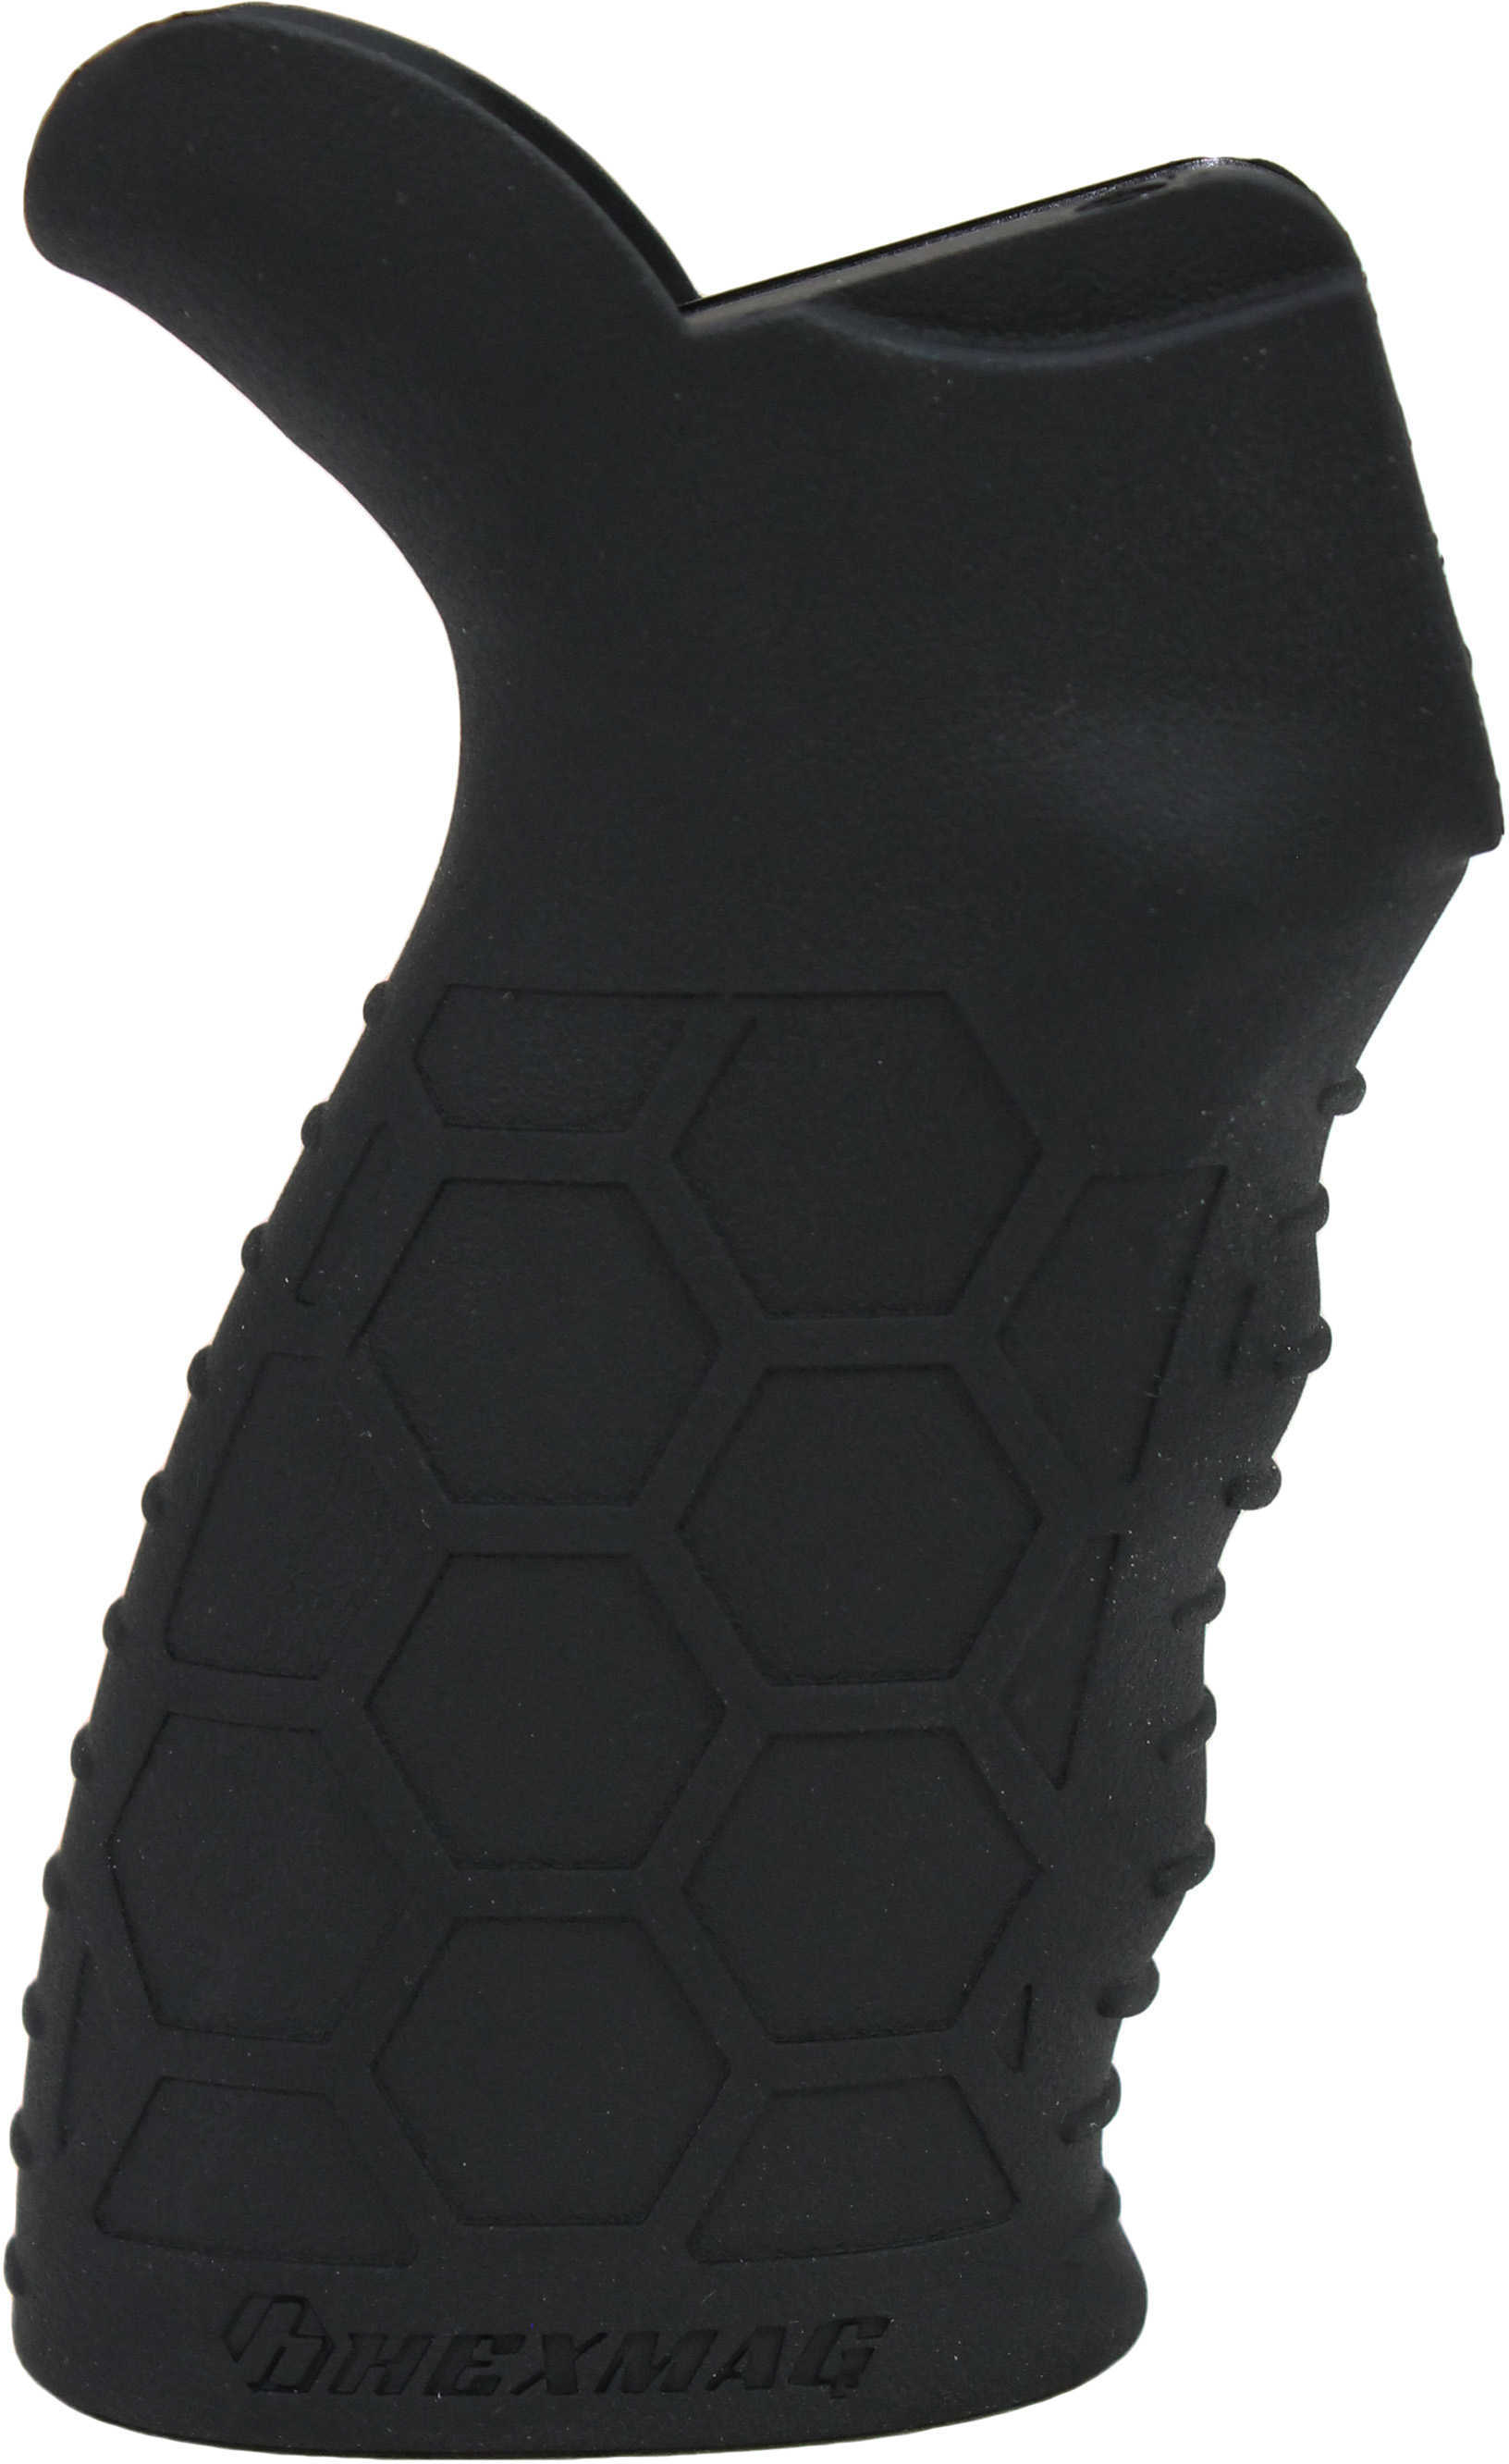 HEXMAG Grip SUREGRIP Kit Black Fits AR-15